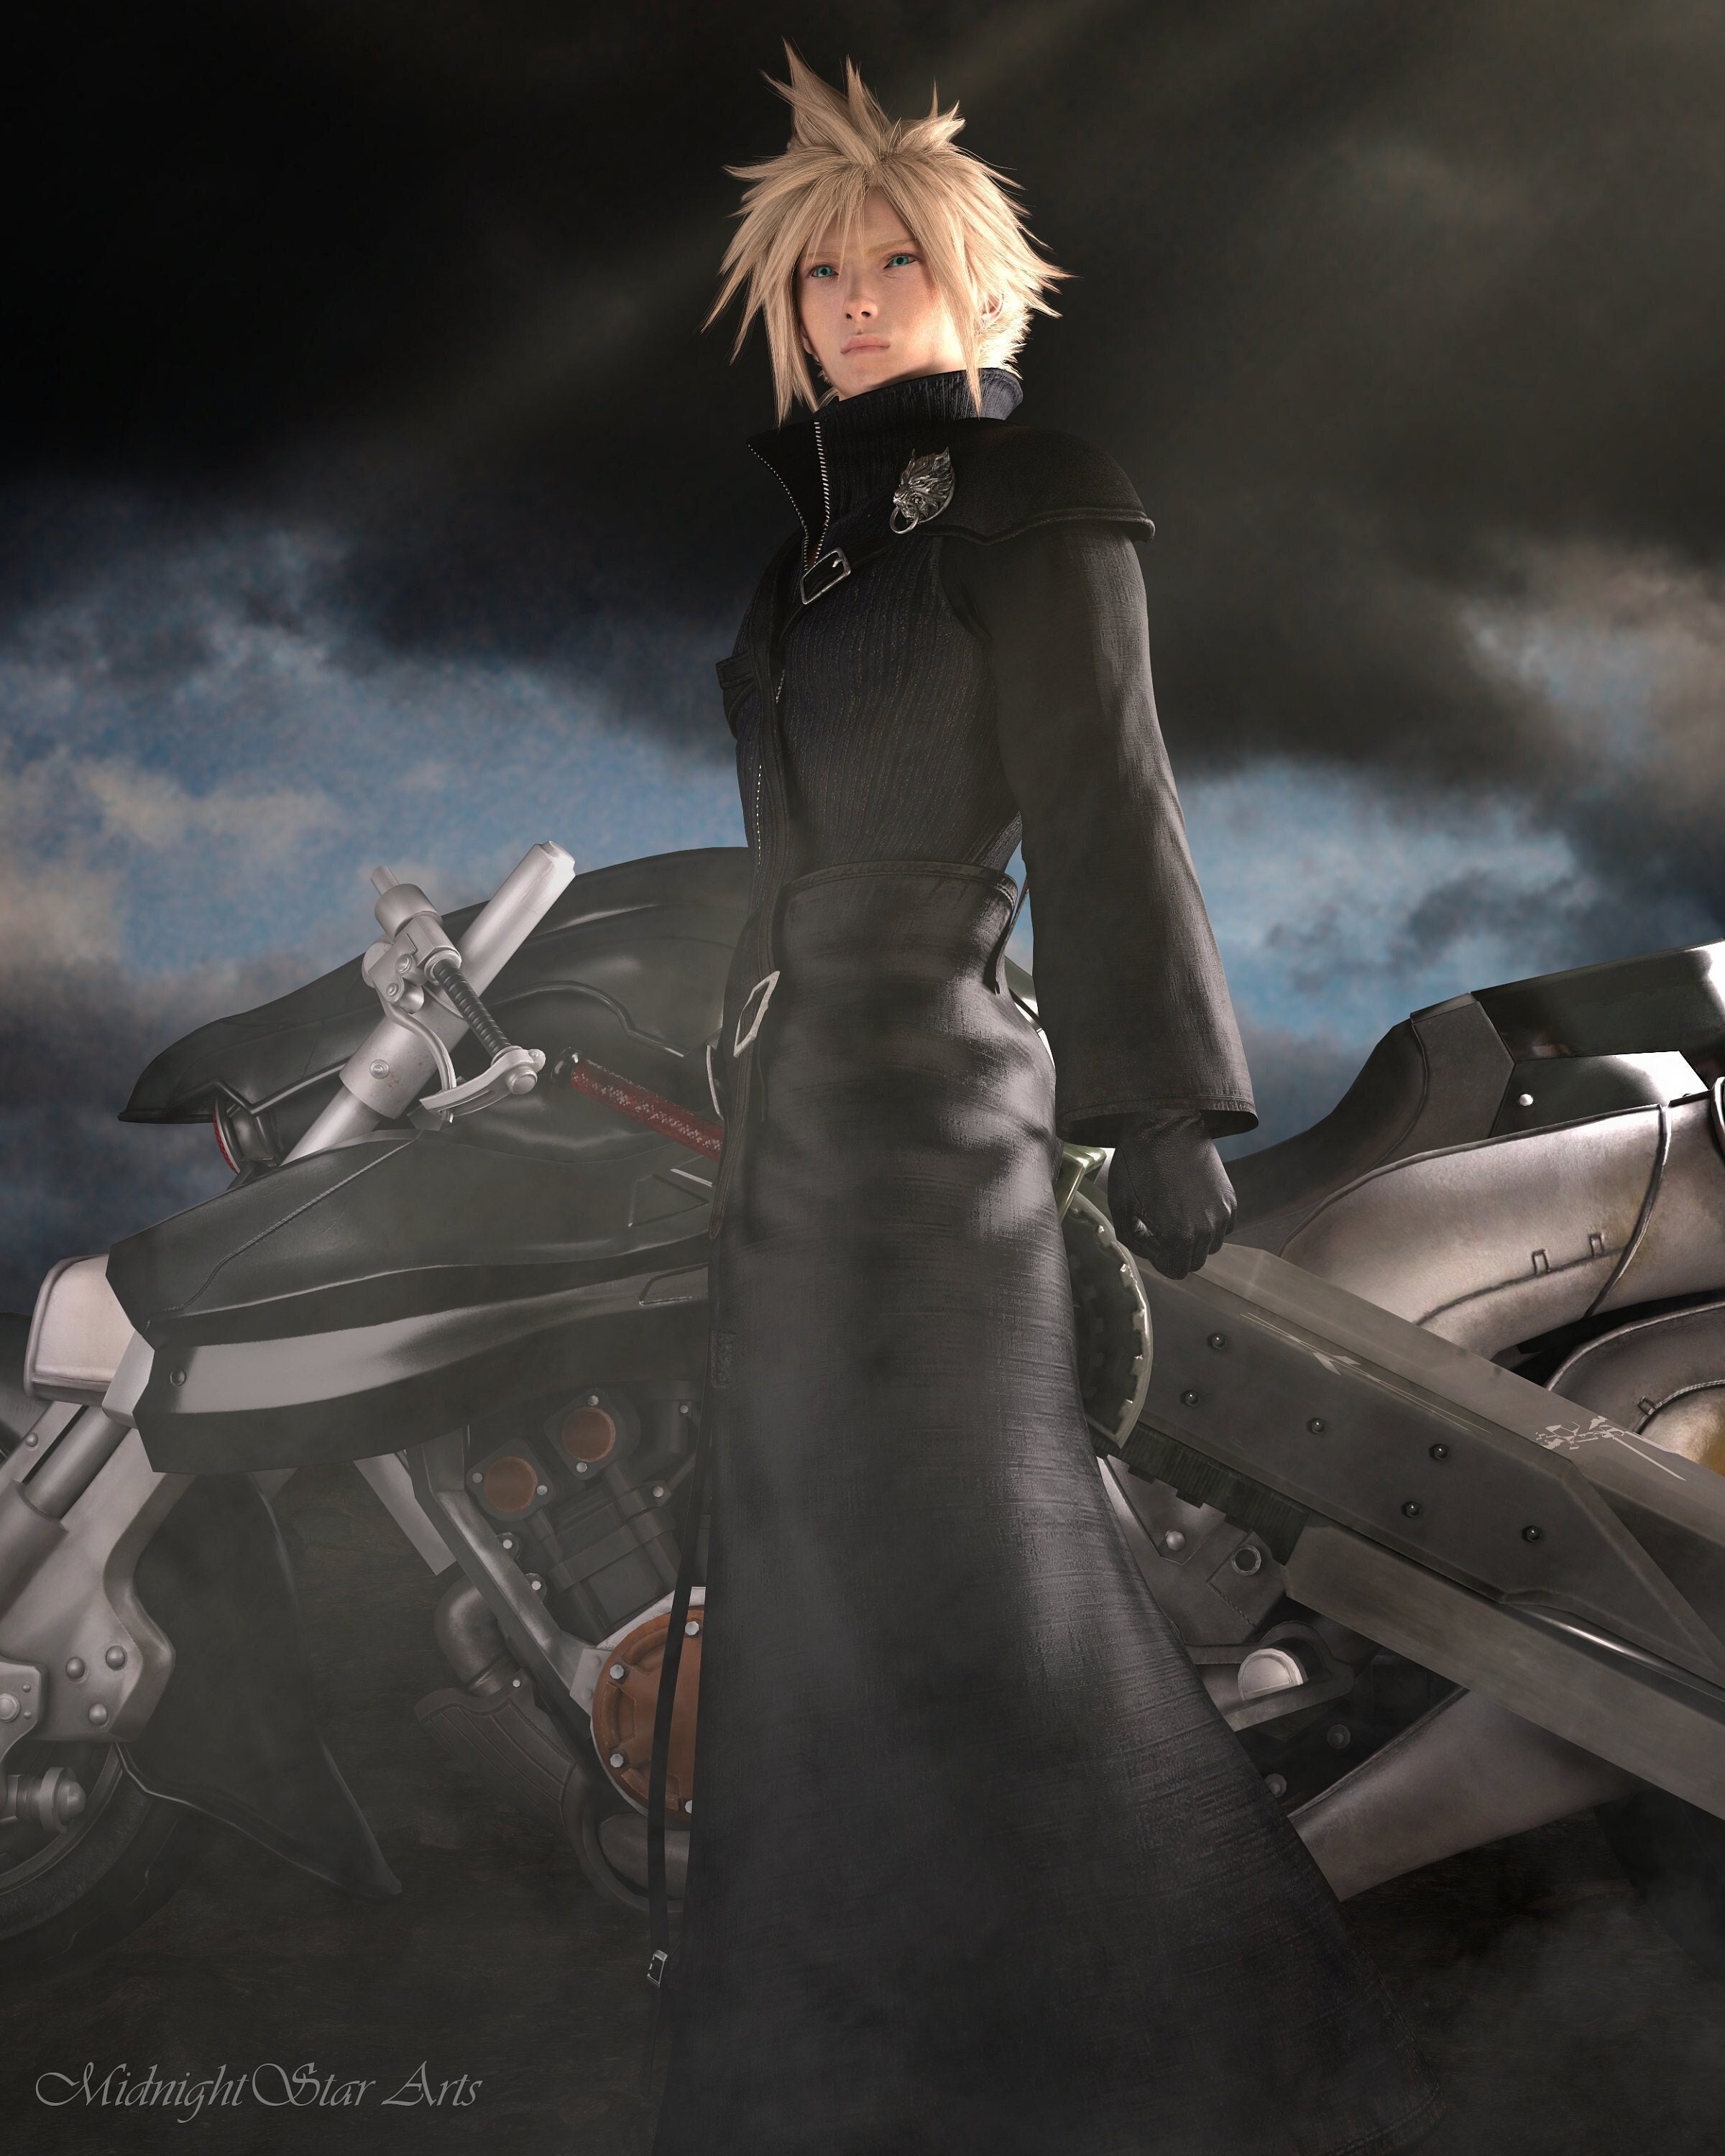 Cloud - Final Fantasy Picture #125275259 | Blingee.com